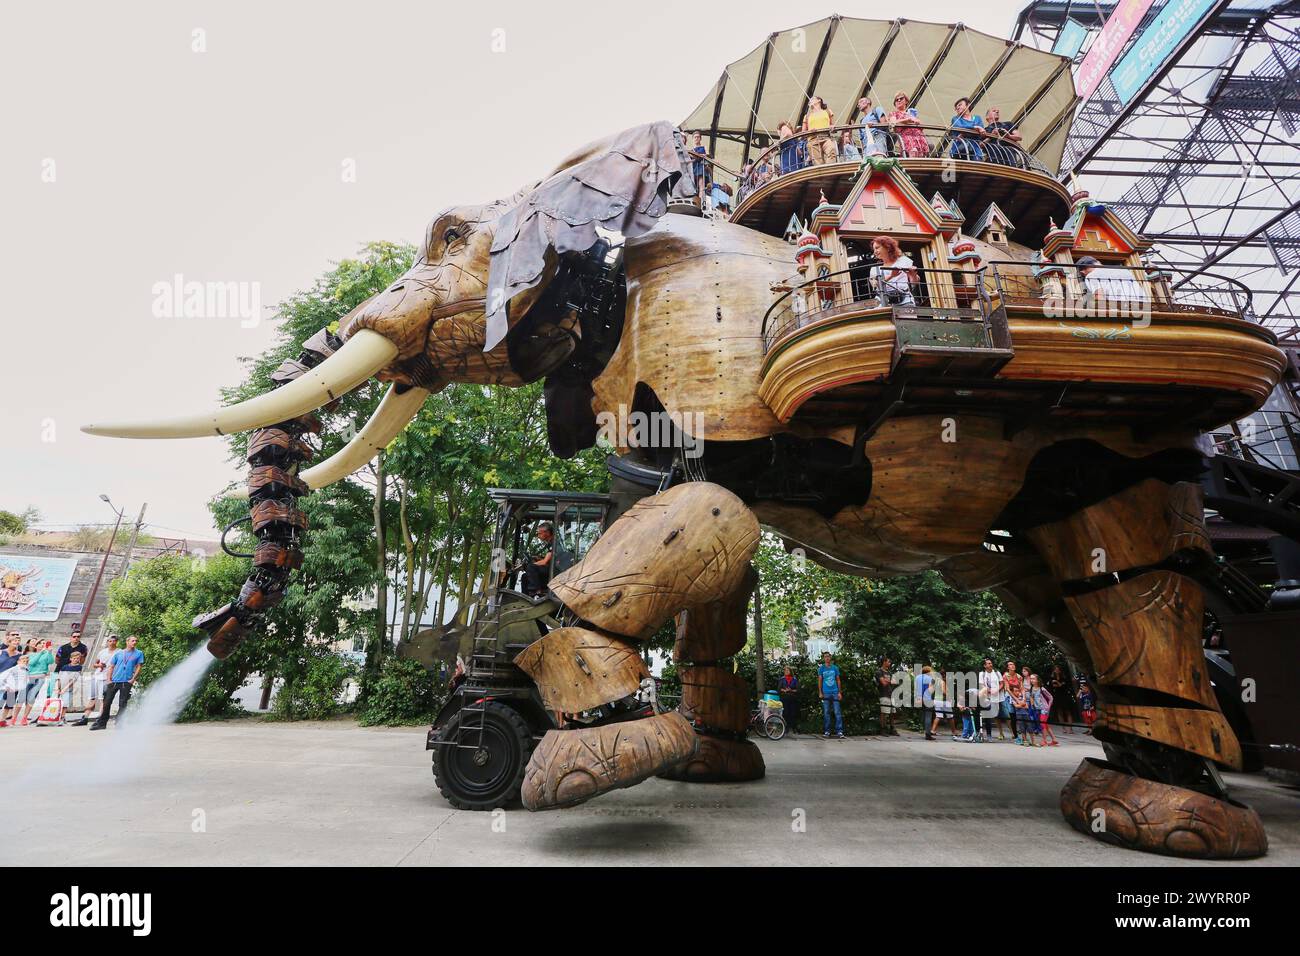 Grand Éléphant, Les Machines de LIle, Nantes, Pays de la Loire, France. Stock Photo